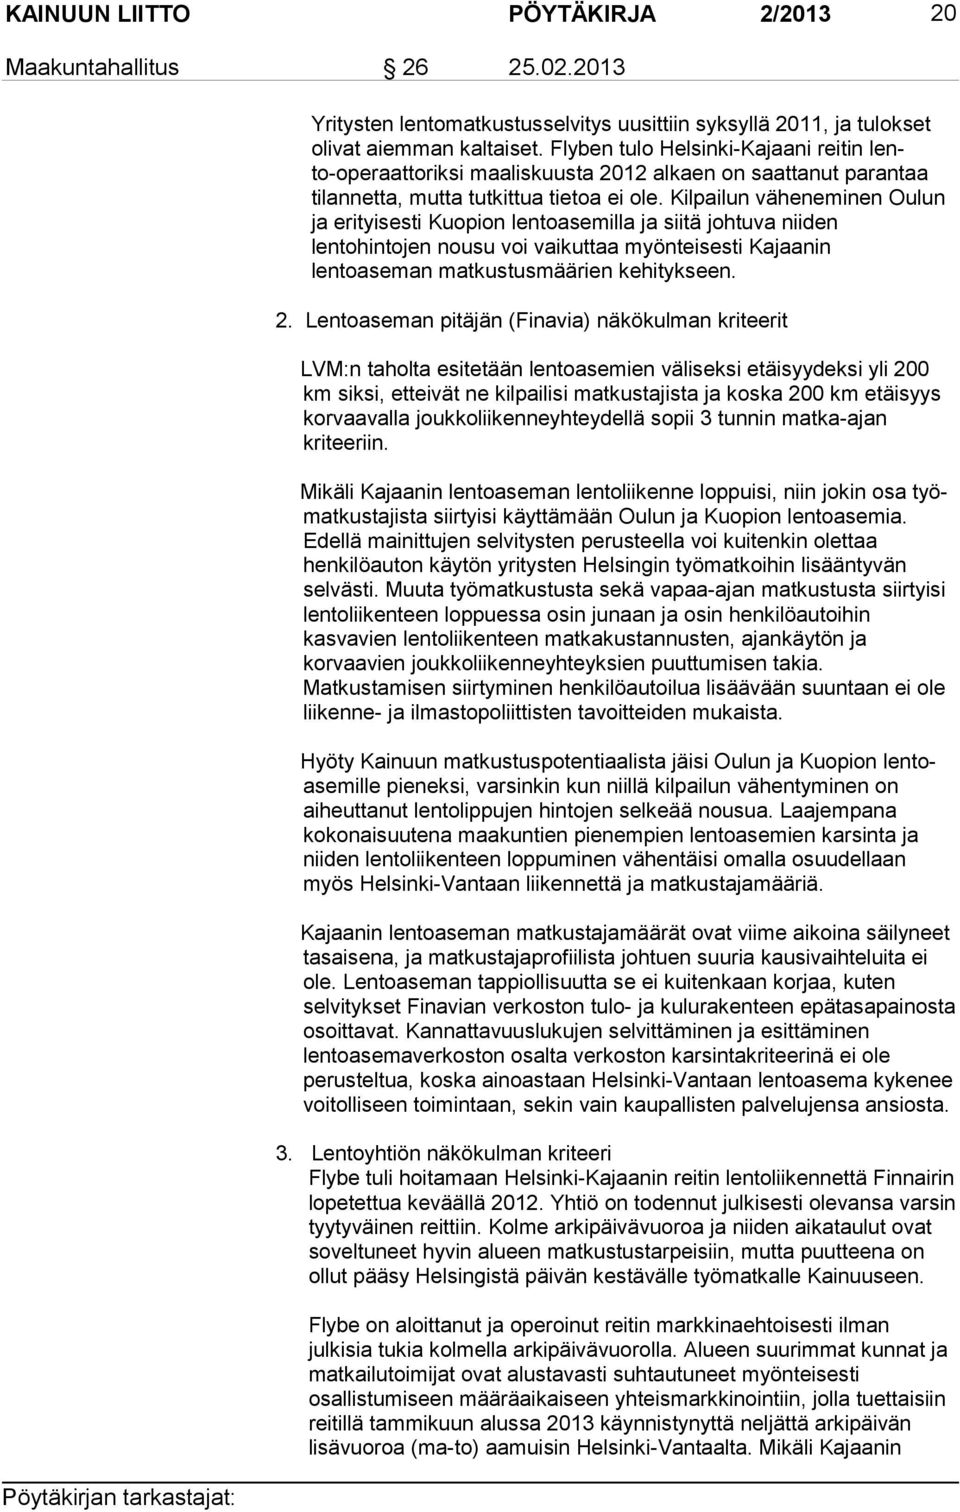 Kilpailun väheneminen Oulun ja erityisesti Kuopion len to ase mil la ja siitä johtuva niiden lentohintojen nousu voi vaikuttaa myön tei ses ti Kajaanin lentoaseman matkustusmäärien kehitykseen. 2.